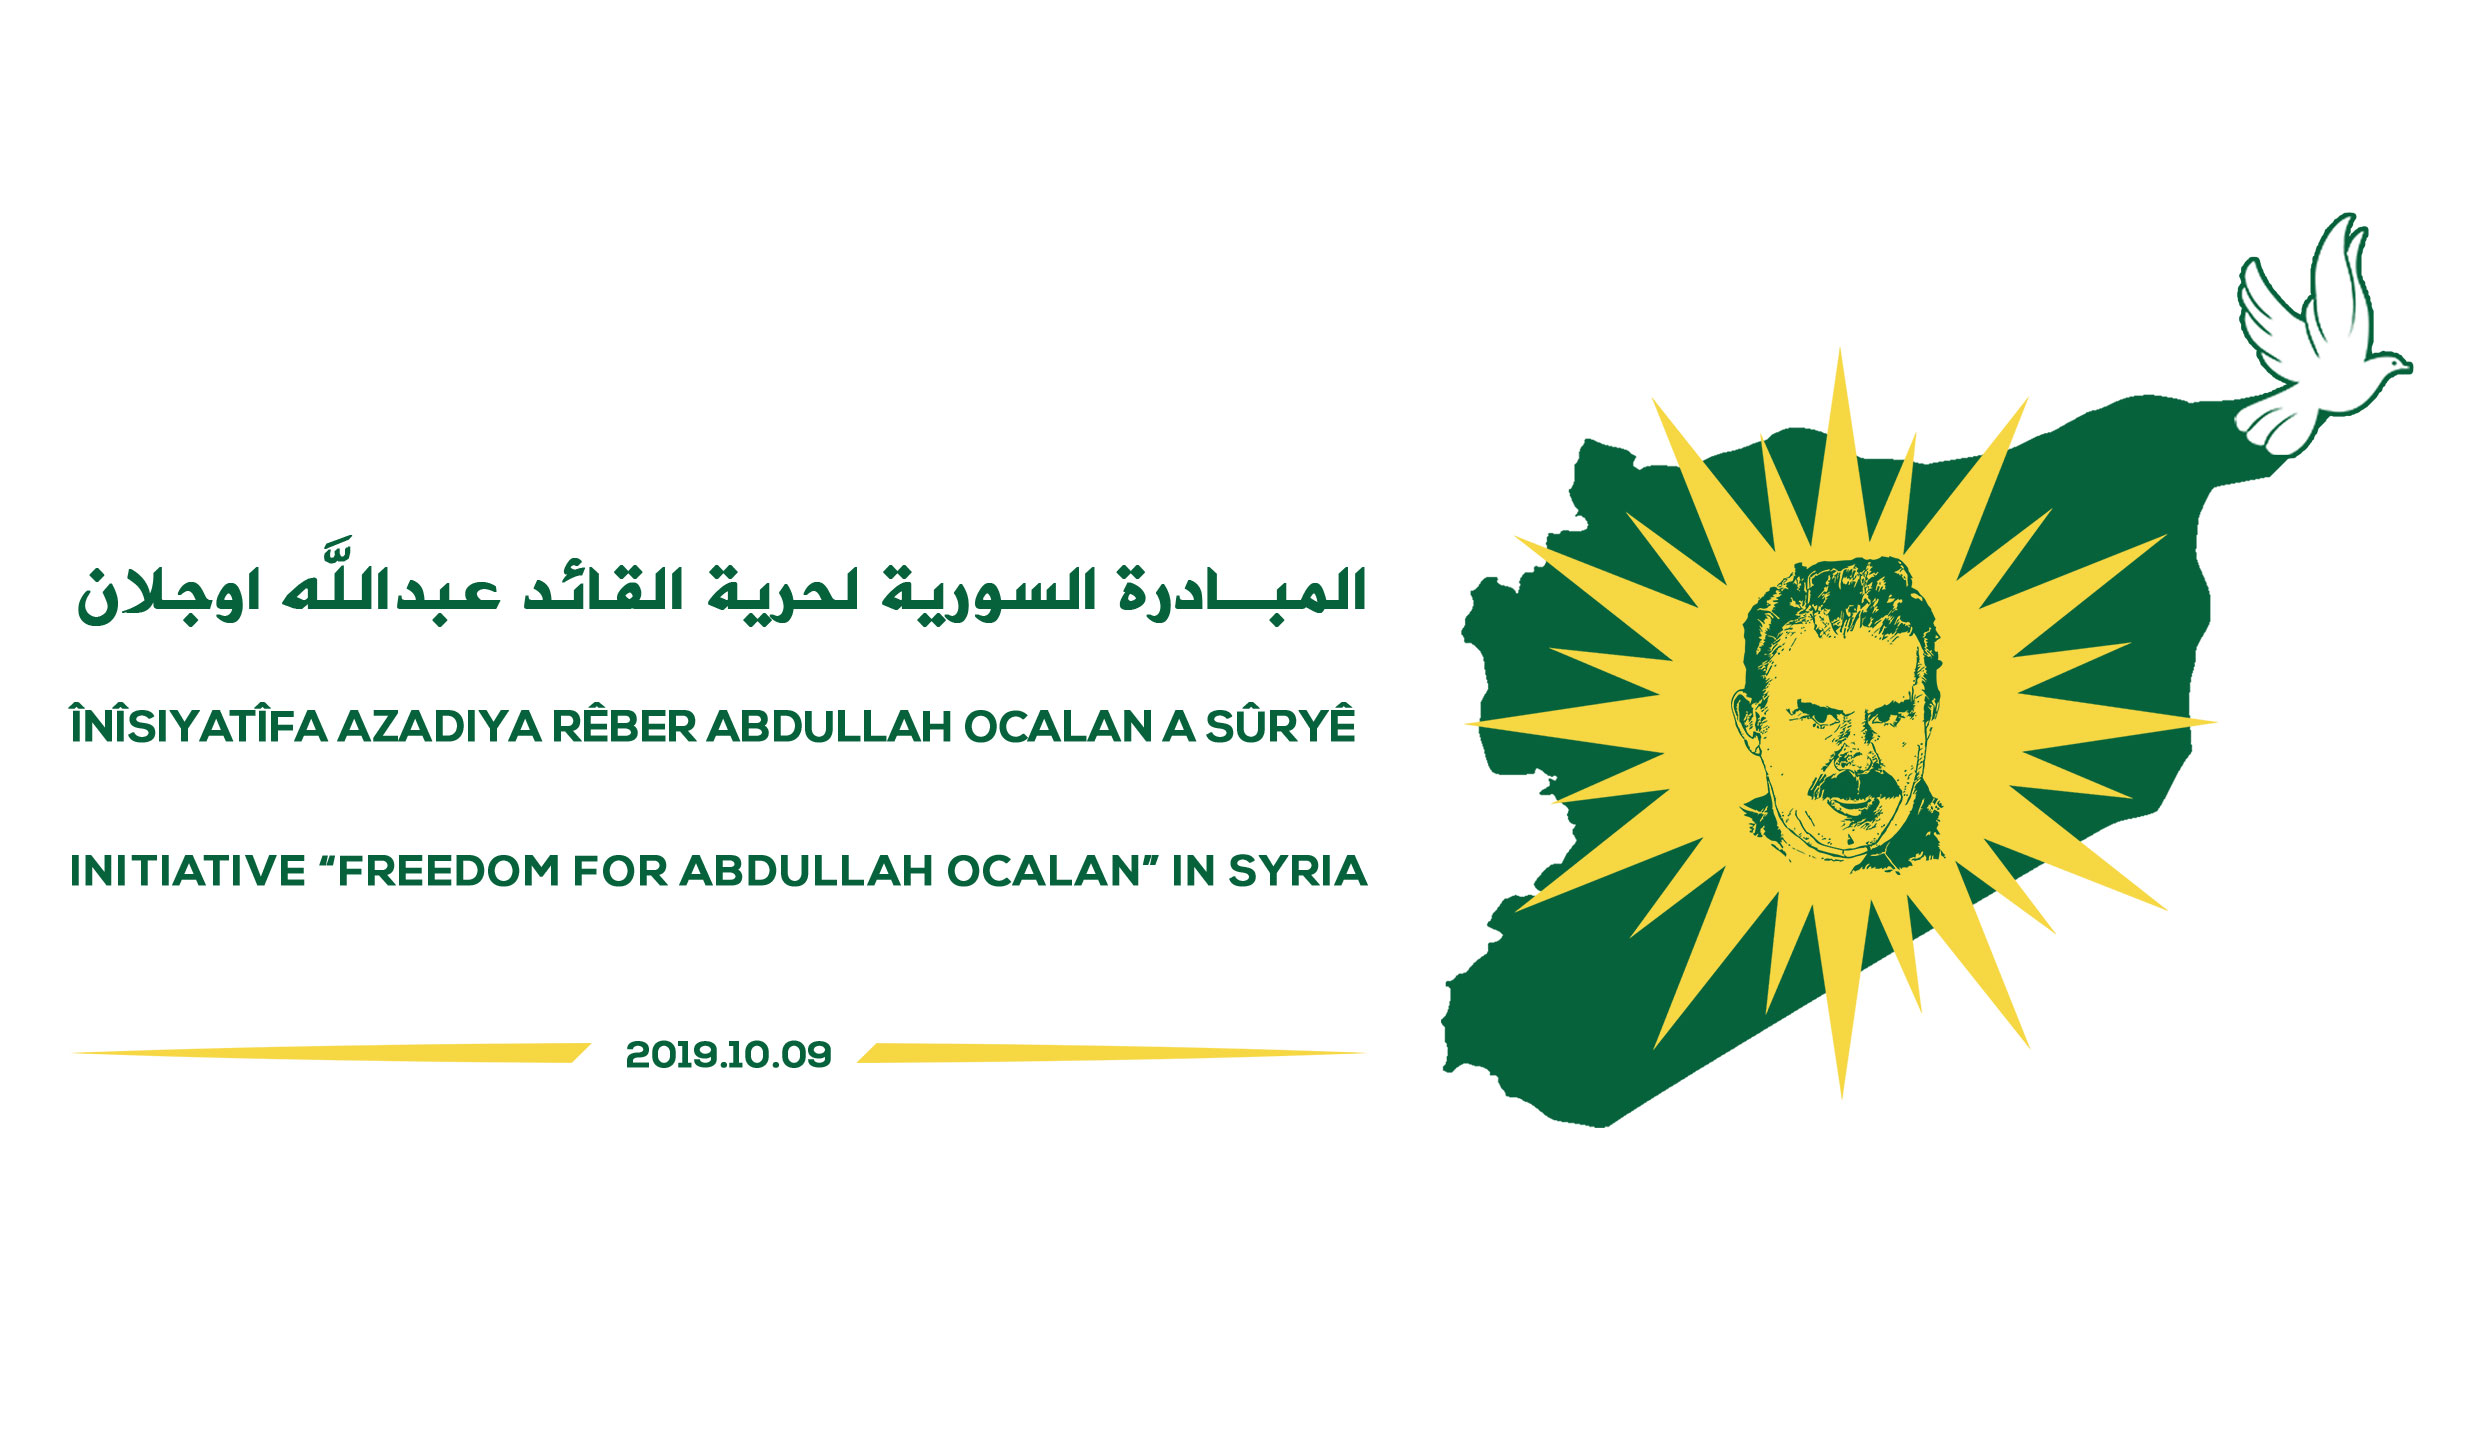 المبادرة السورية لحرية القائد عبدالله اوجلان